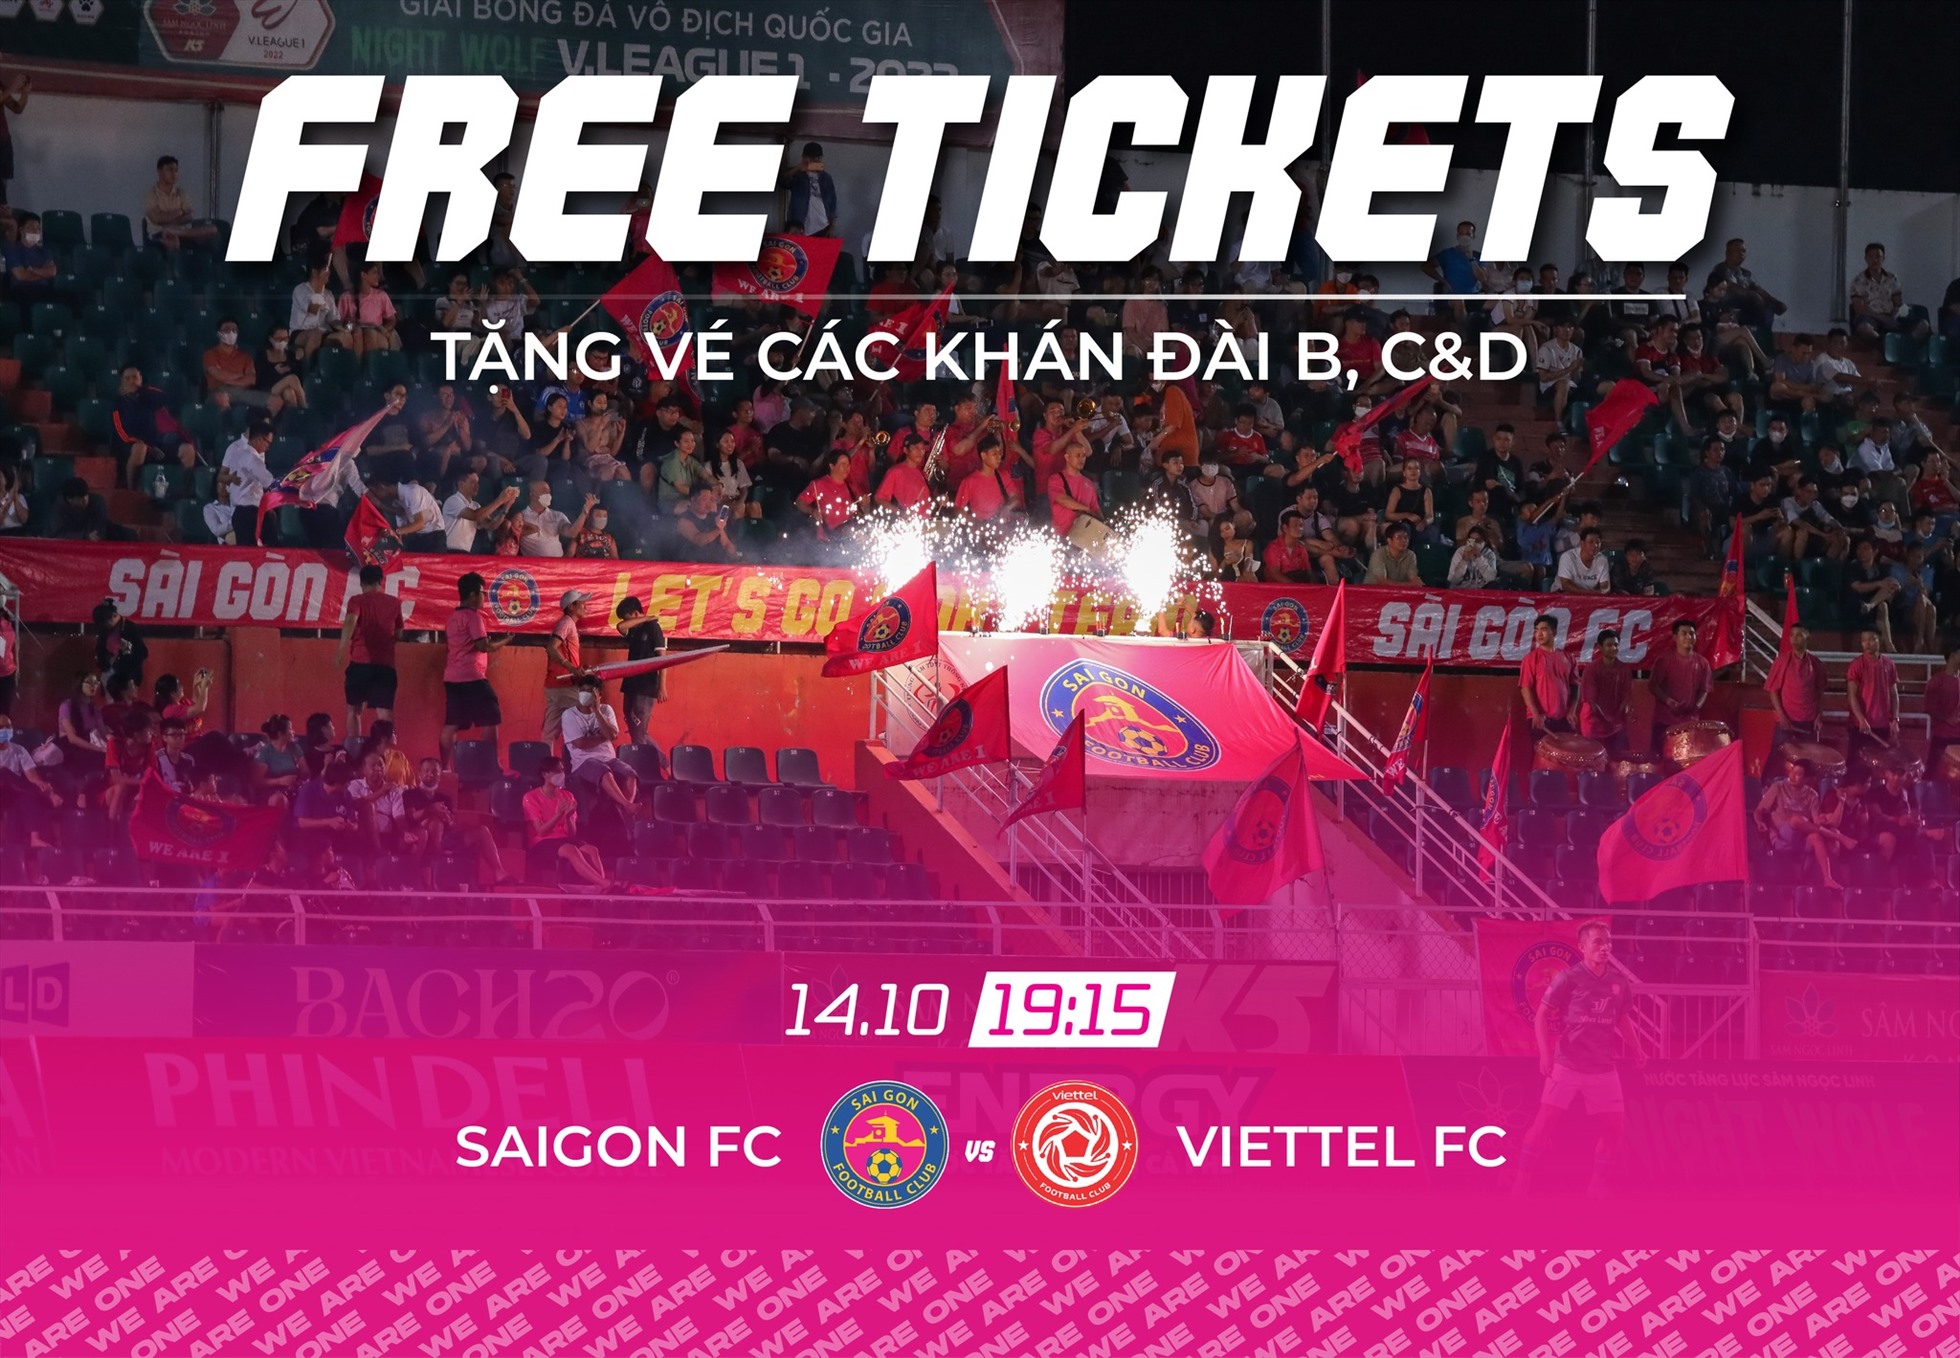 Câu lạc bộ Sài Gòn miễn phí vé cho người hâm mộ vào sân xem trận đấu với Viettel. Ảnh: SGFC